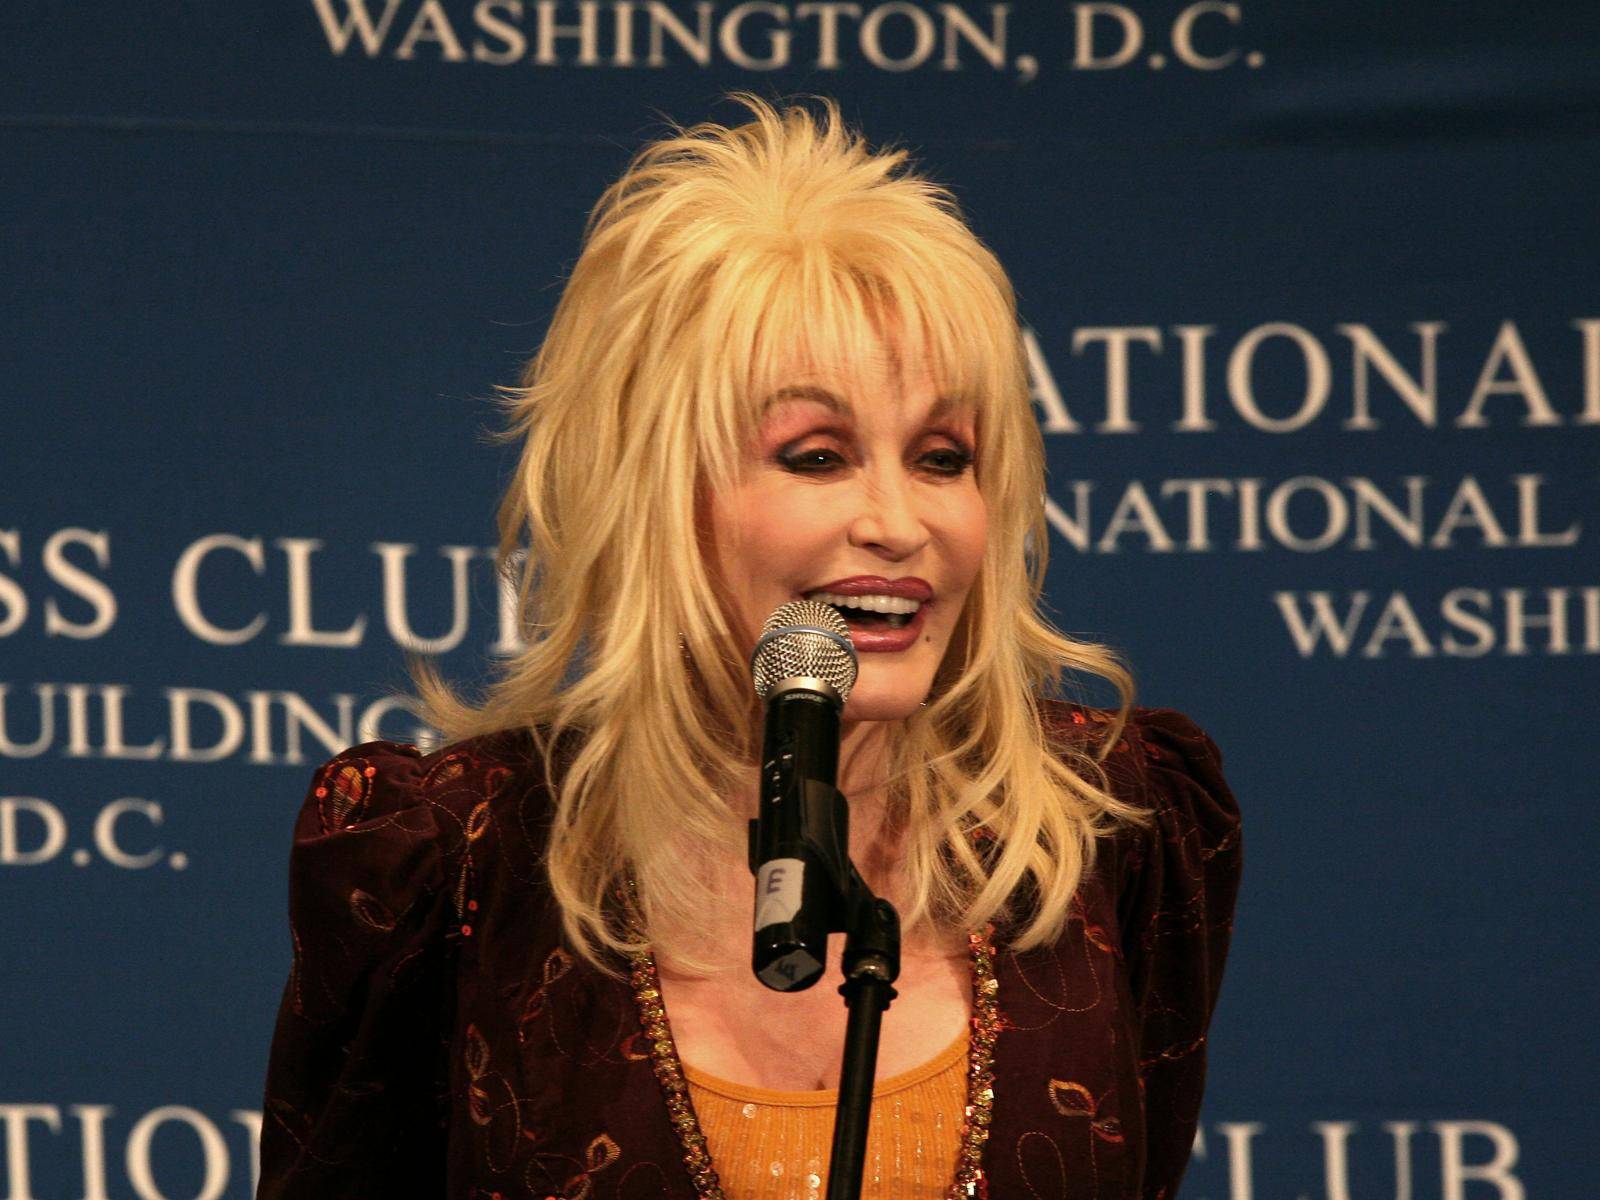 Dolly Parton at National Press Club - Washington